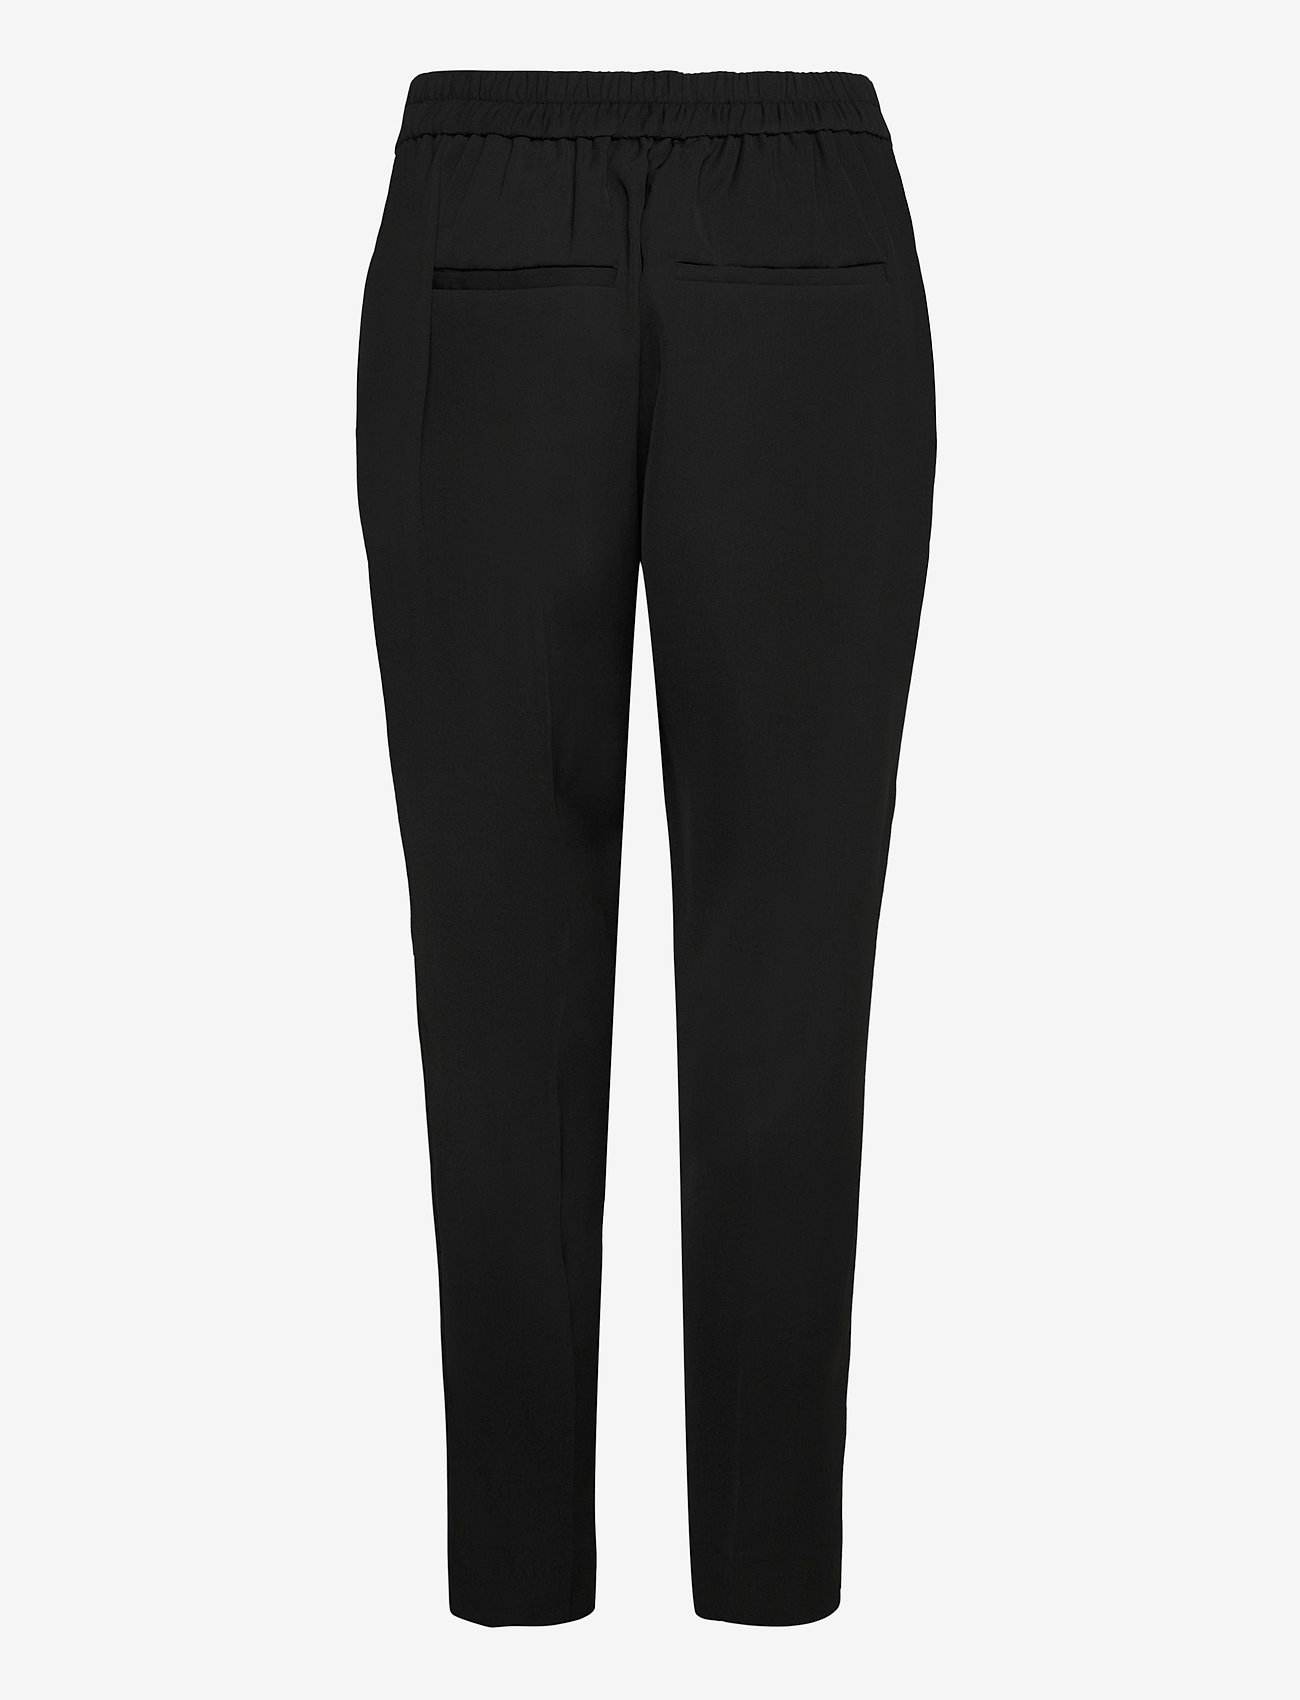 Second Female - Garbo Trousers - tiesaus kirpimo kelnės - black - 1